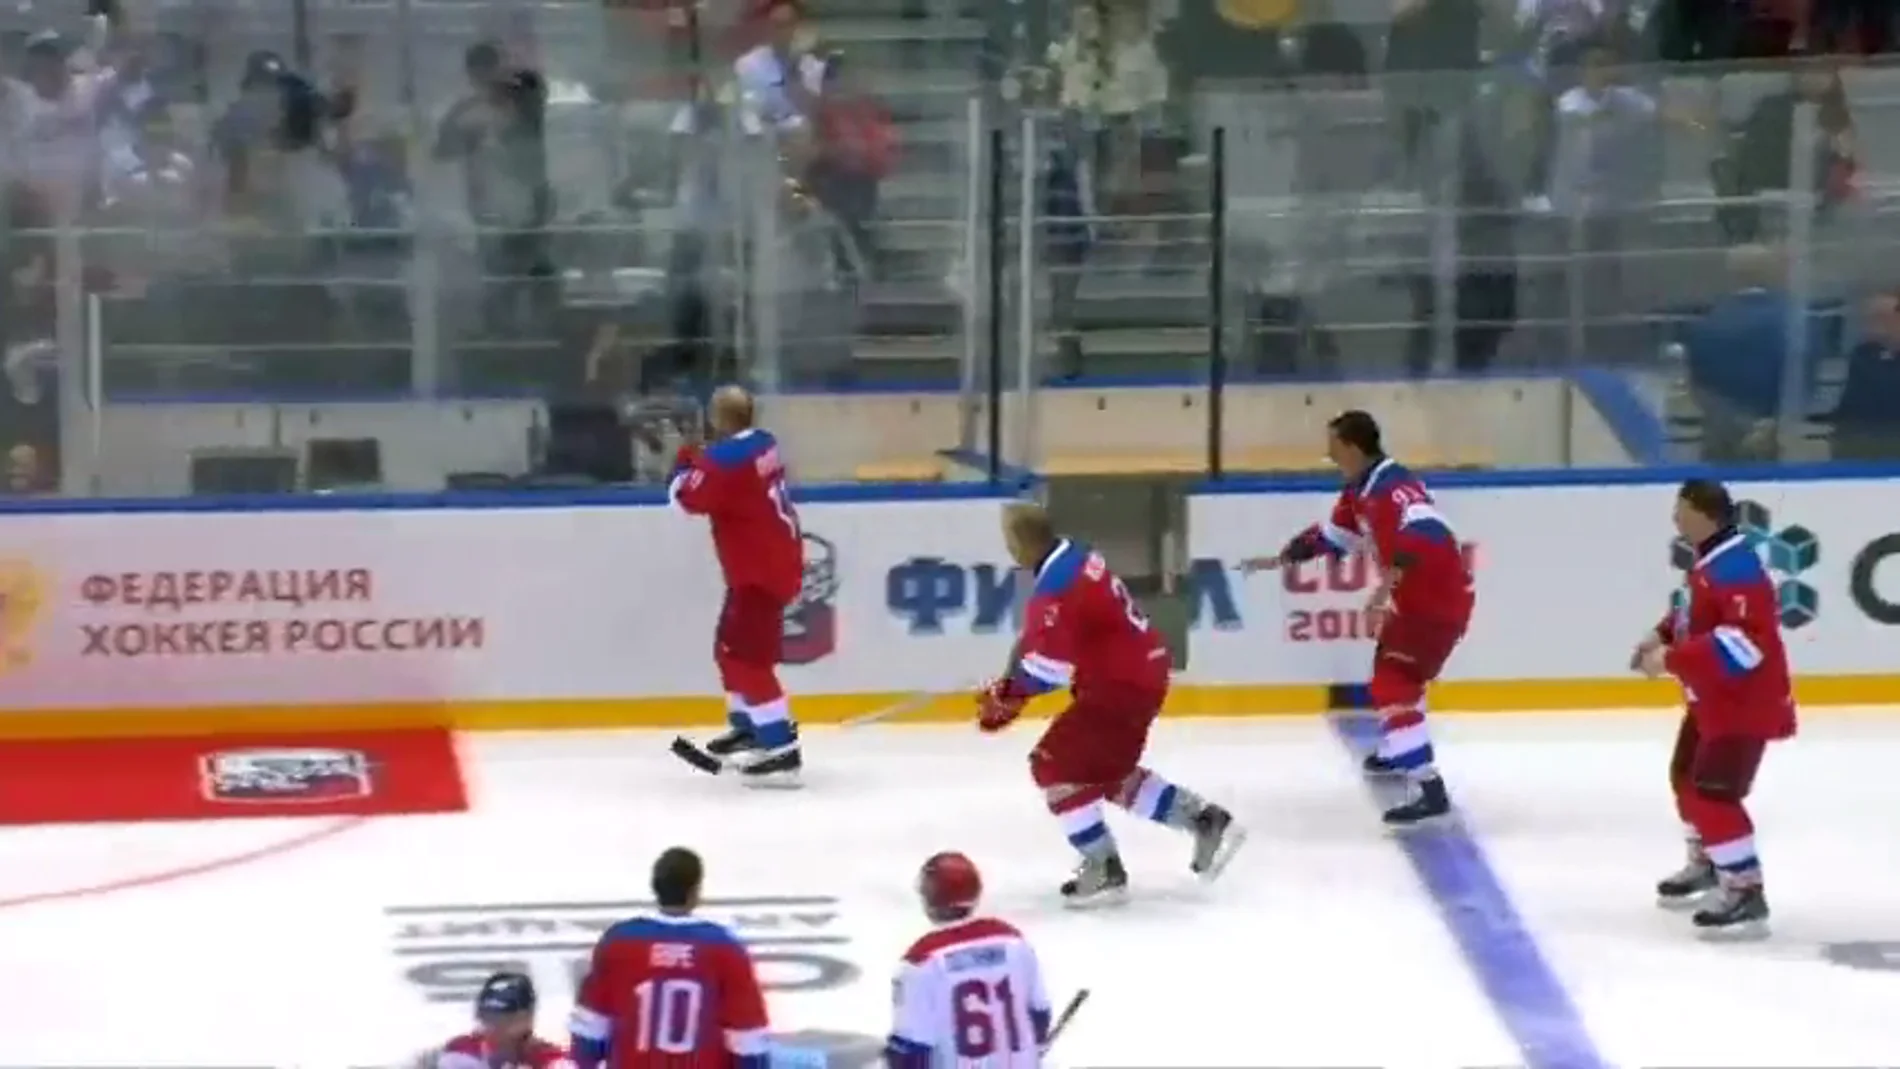 Putin sufre una aparatosa caída tras exhibirse en un partido de hockey hielo